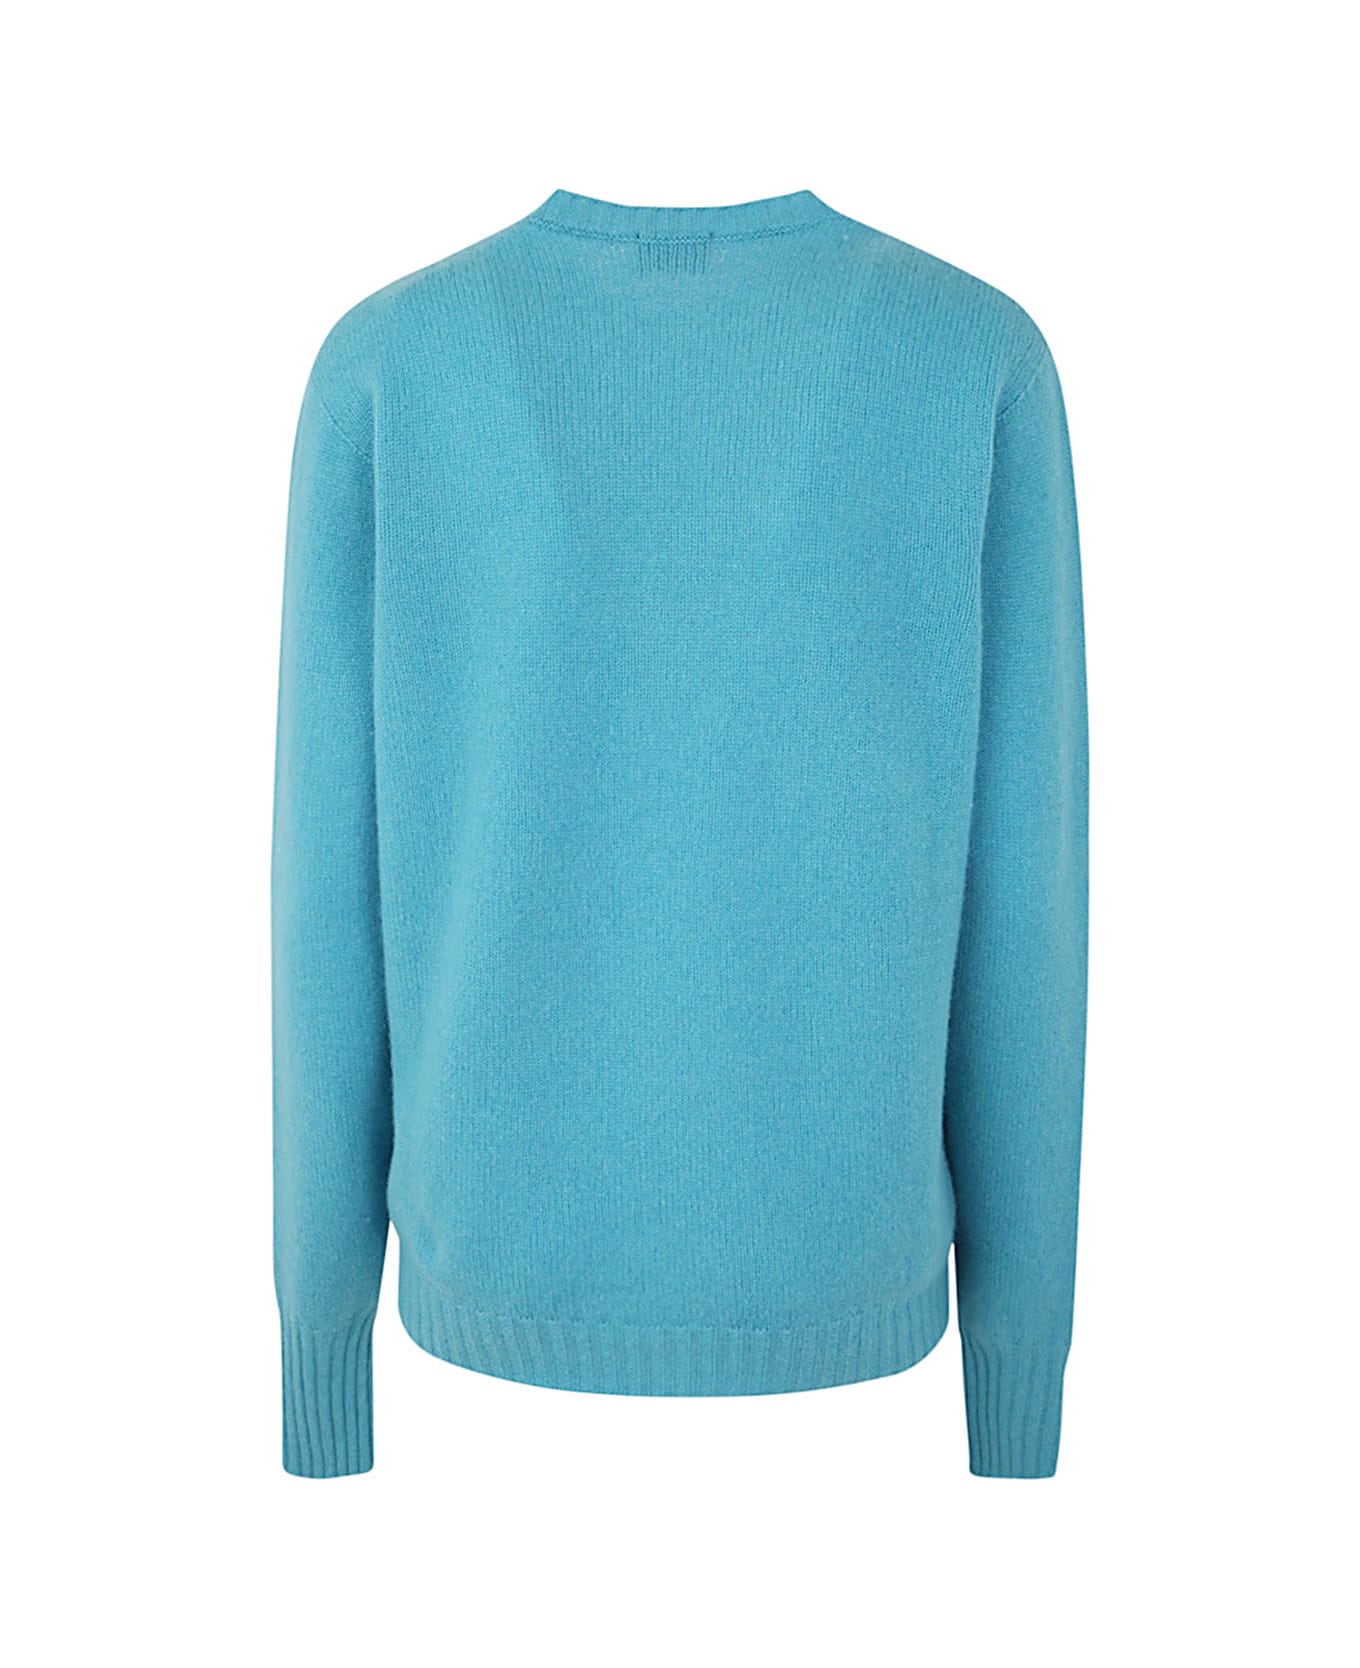 Drumohr Long Sleeve Crew Neck Sweater - Light Blue ニットウェア